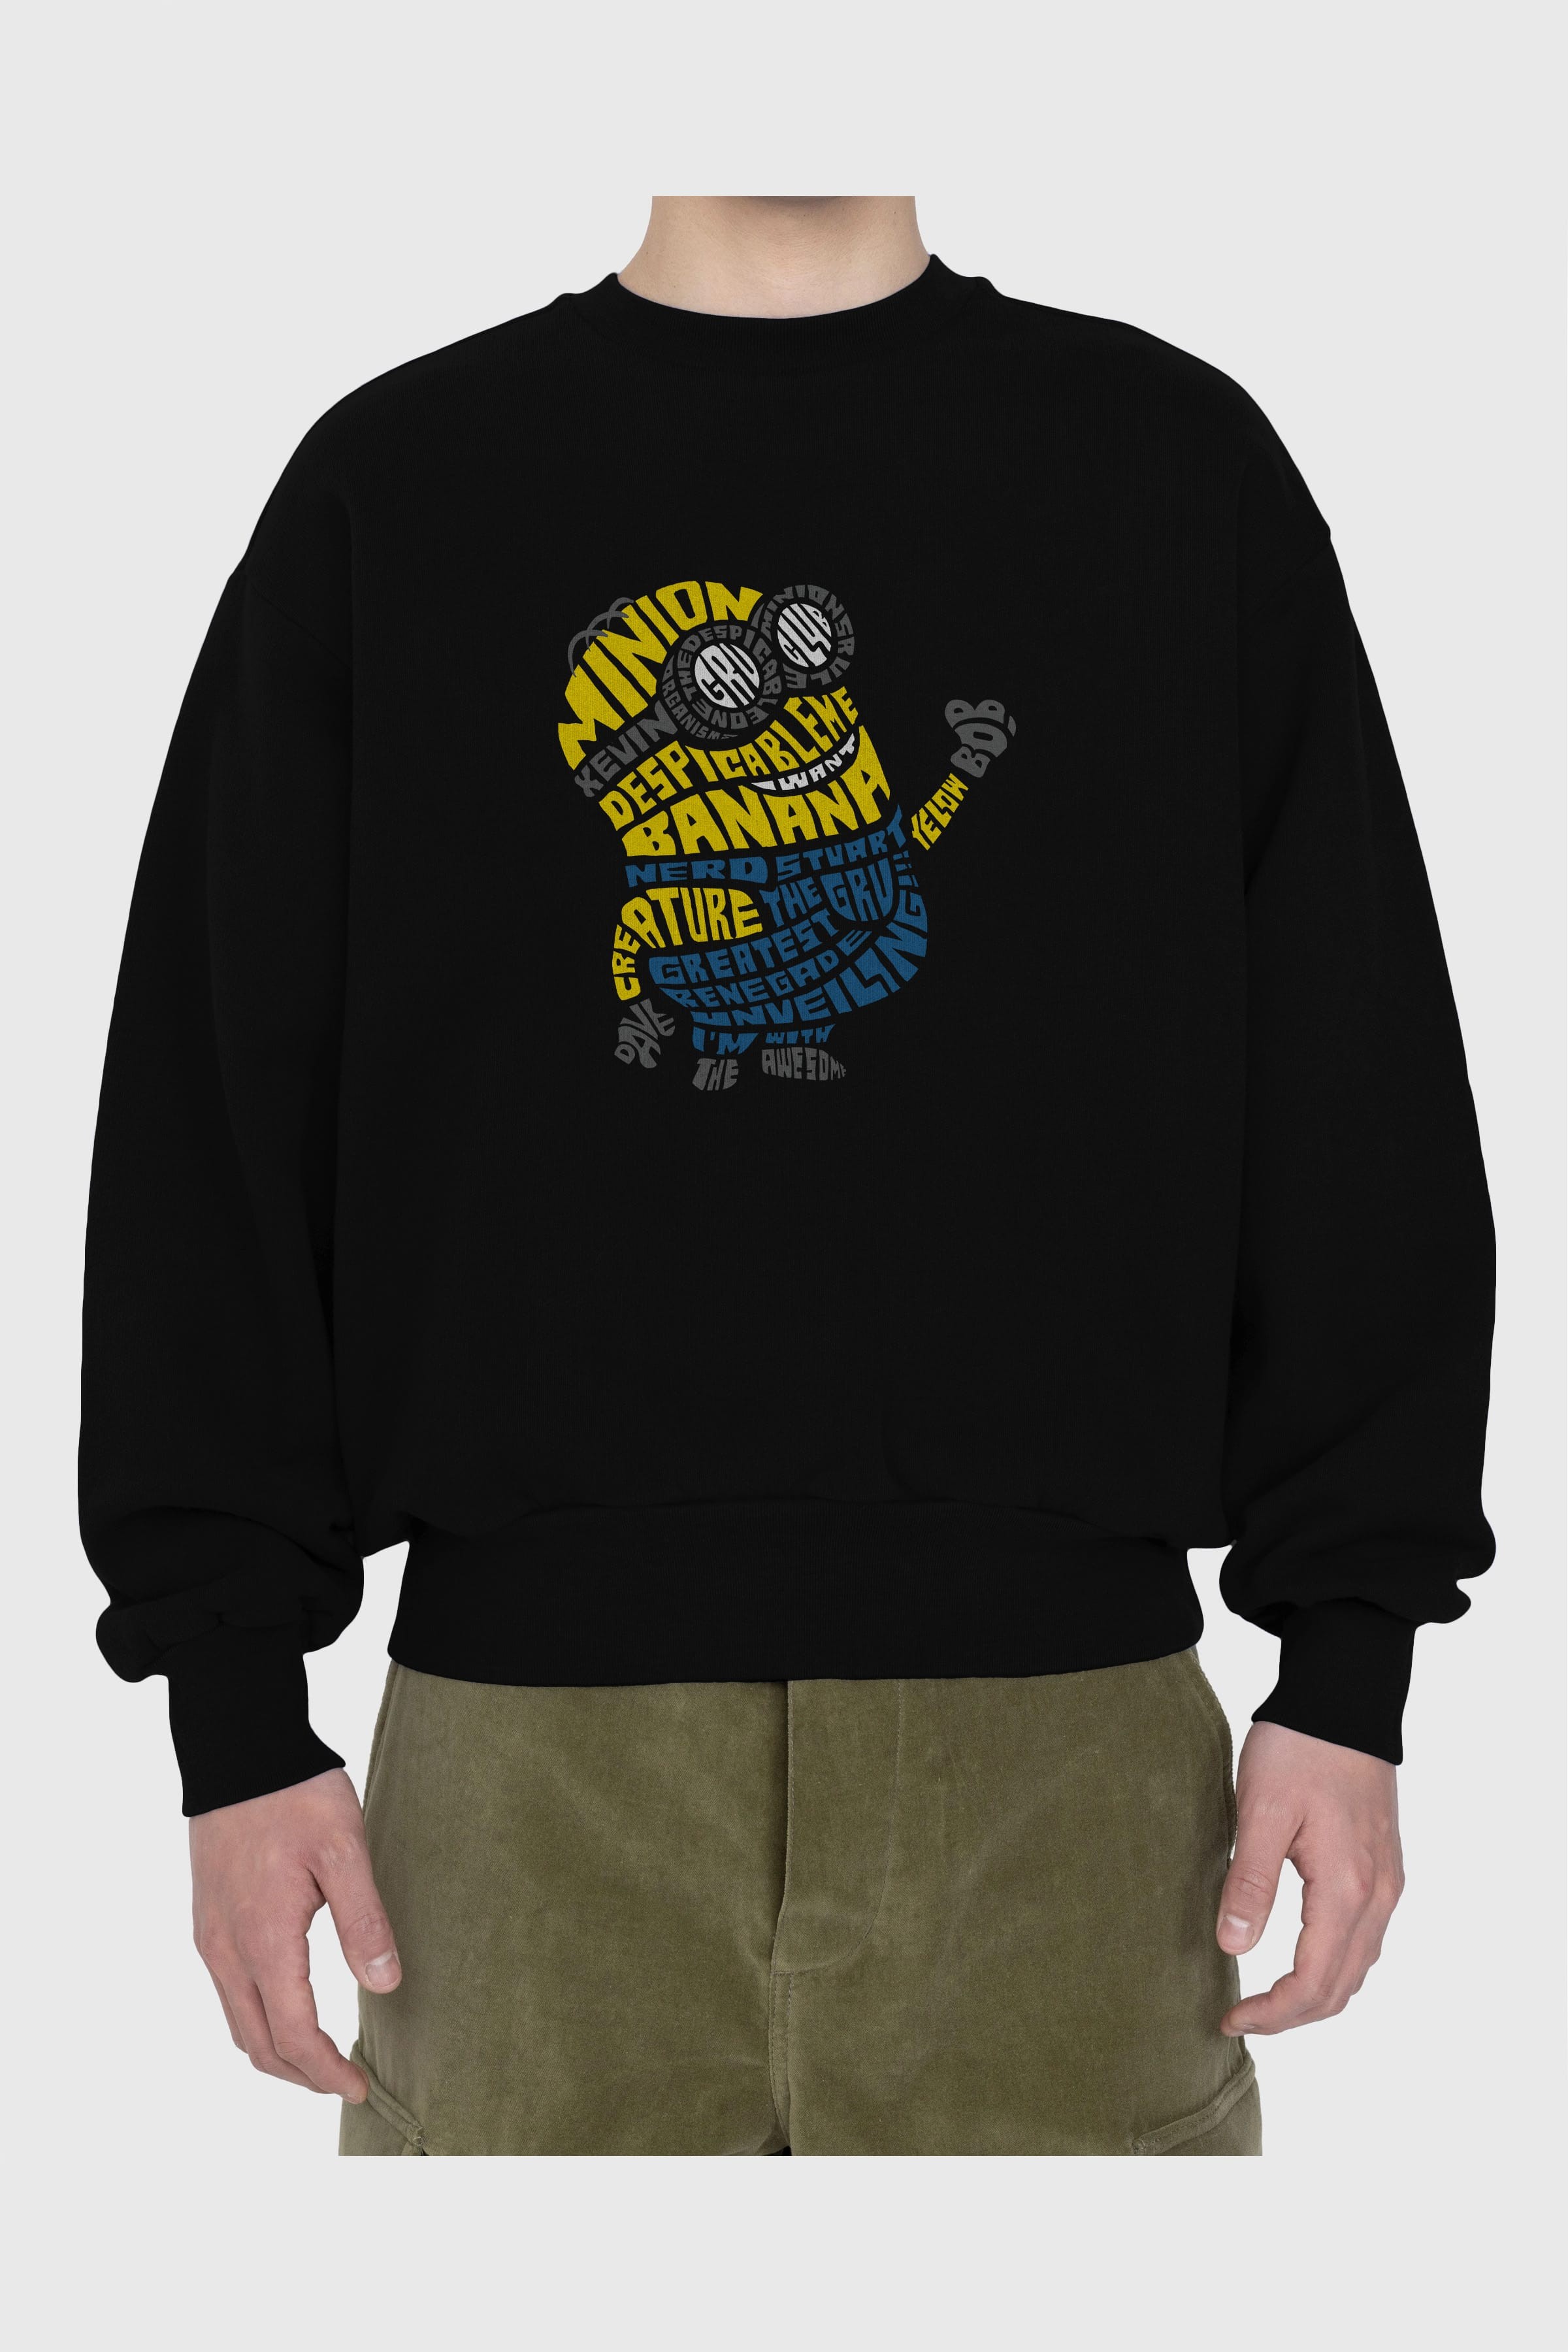 Minion Ön Baskılı Oversize Sweatshirt Erkek Kadın Unisex